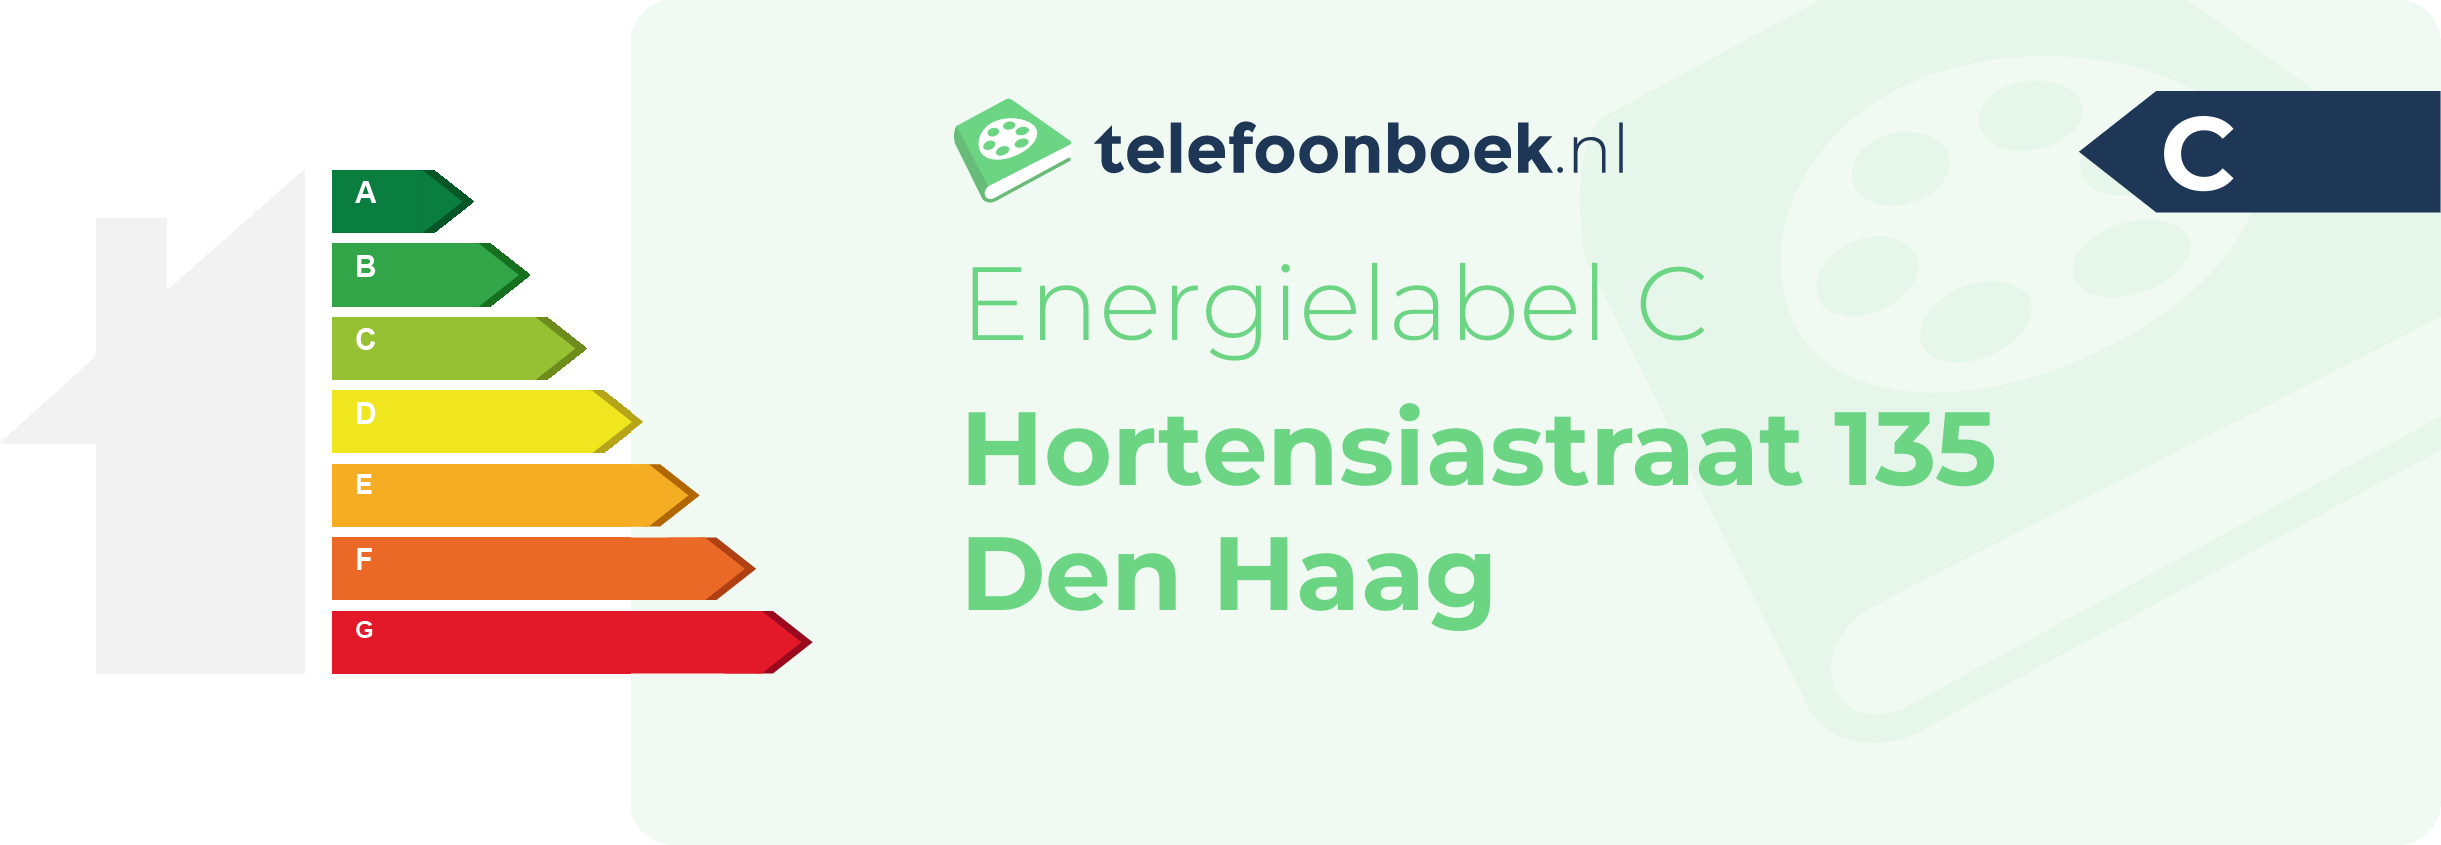 Energielabel Hortensiastraat 135 Den Haag